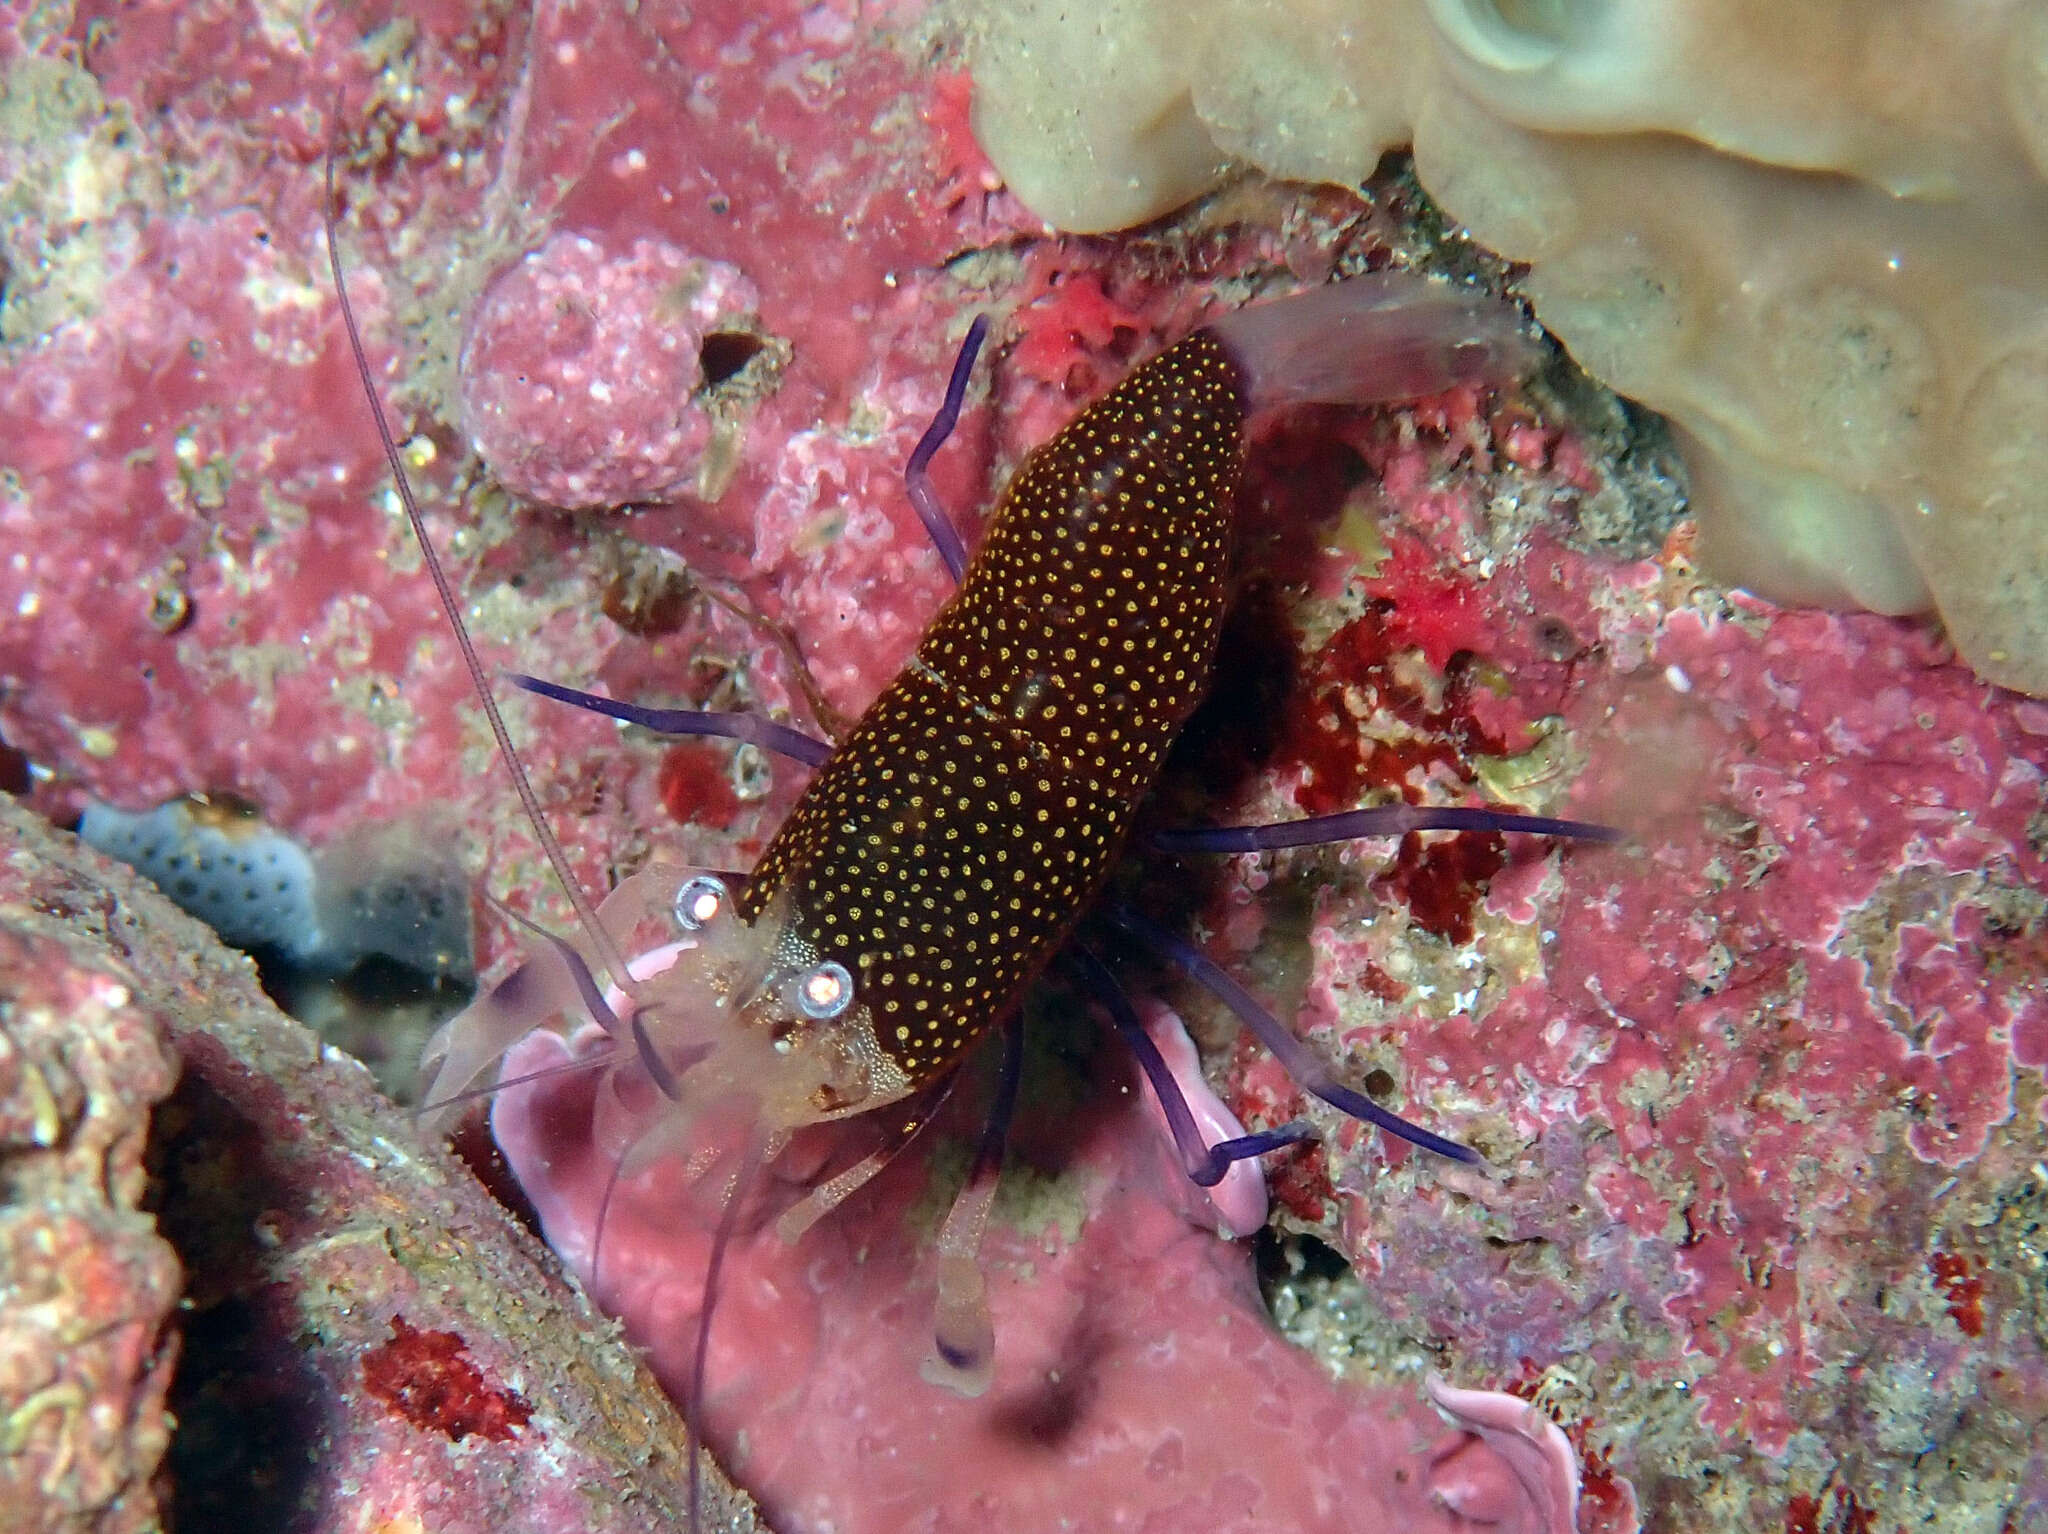 Image of golden-spotted shrimp